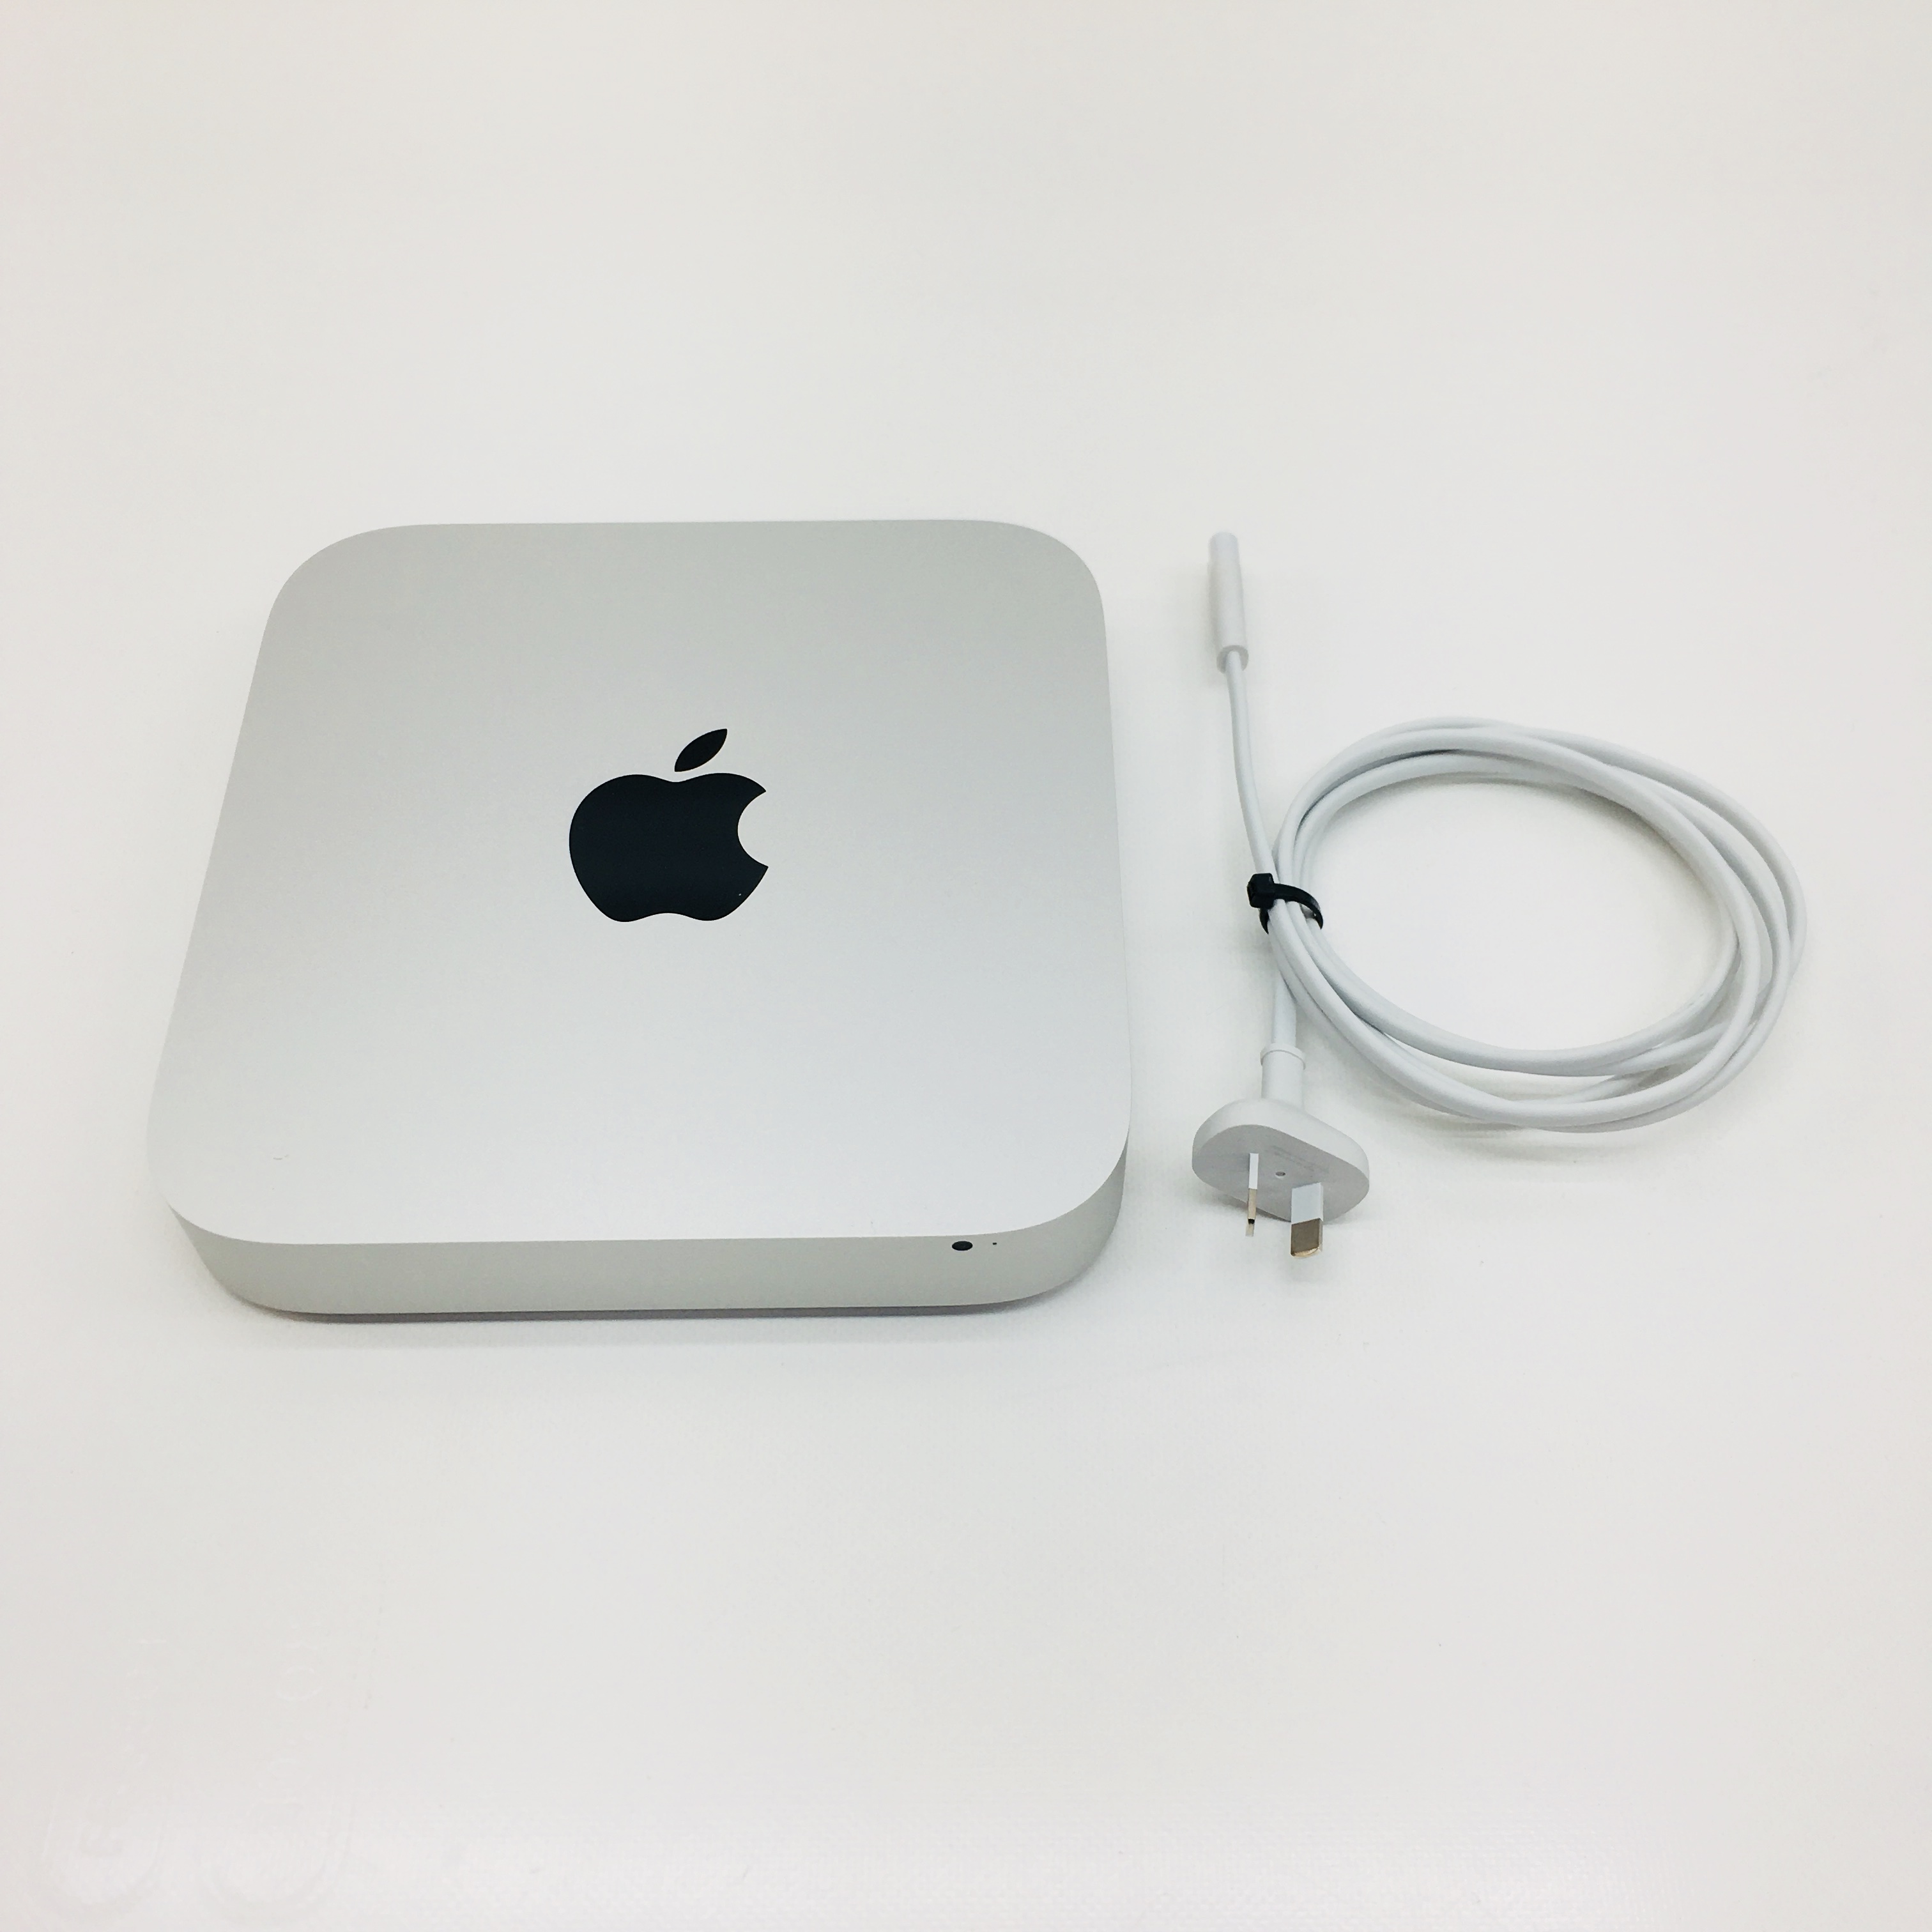 2012 quad core mac mini for sale